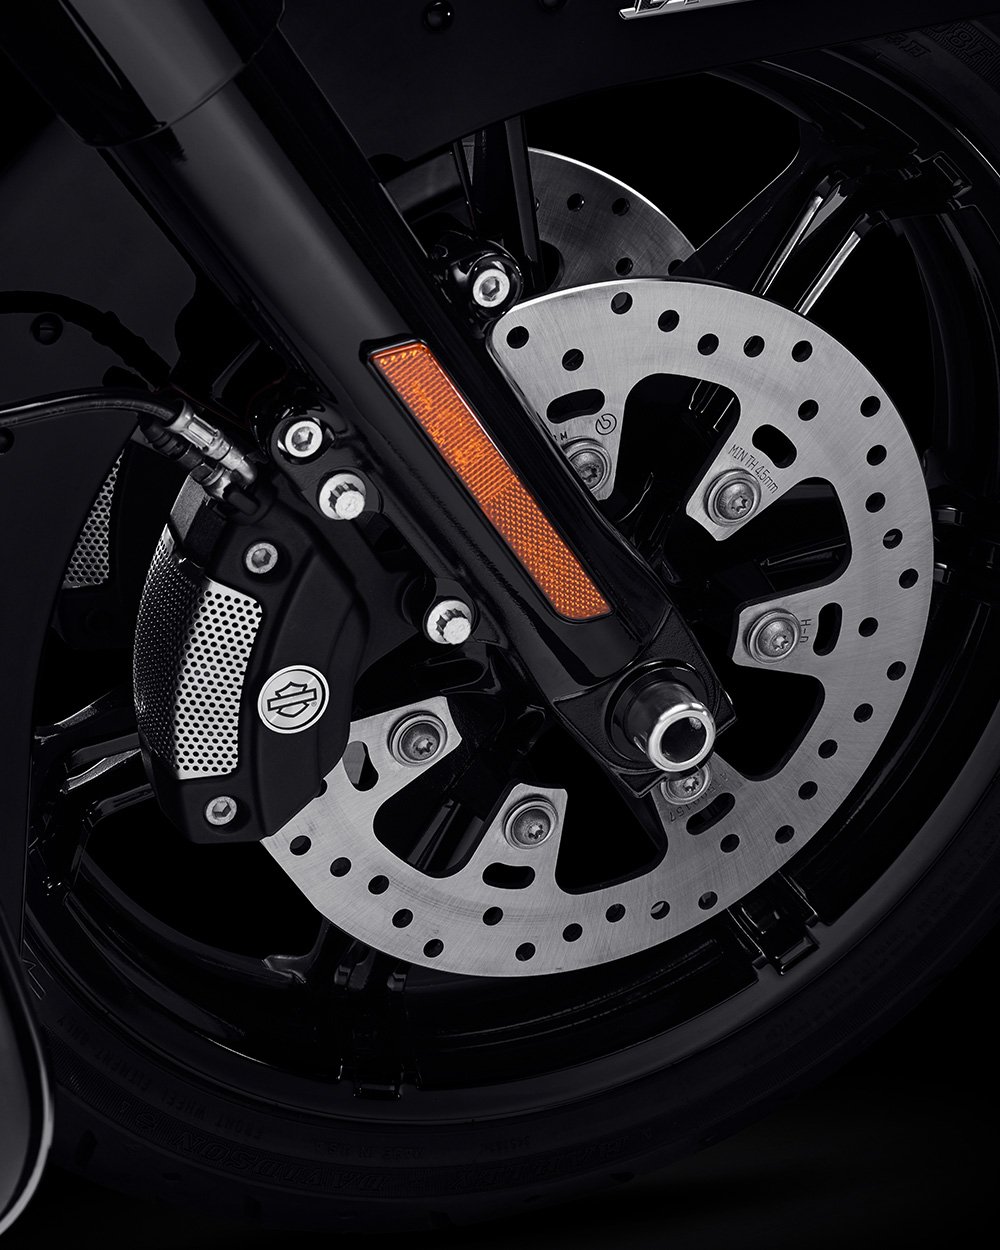 Reflex integrált Brembo fékek választható ABS-szel a 2022-es Road Glide motorkerékpáron